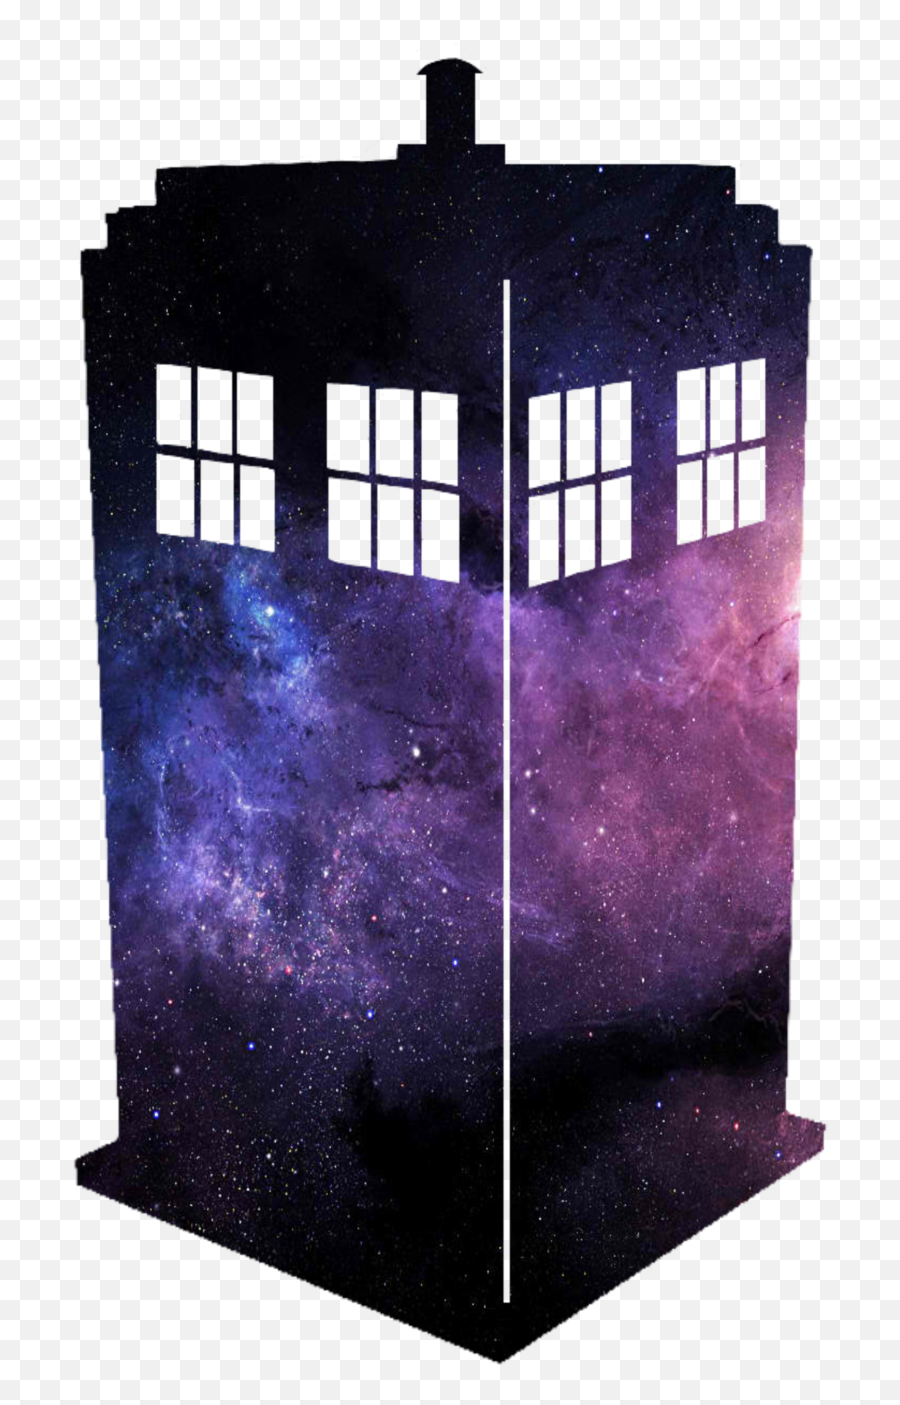 Tardis - Doctor Who Tardis Silhouette Transparent Background Emoji,Tardis Emoji